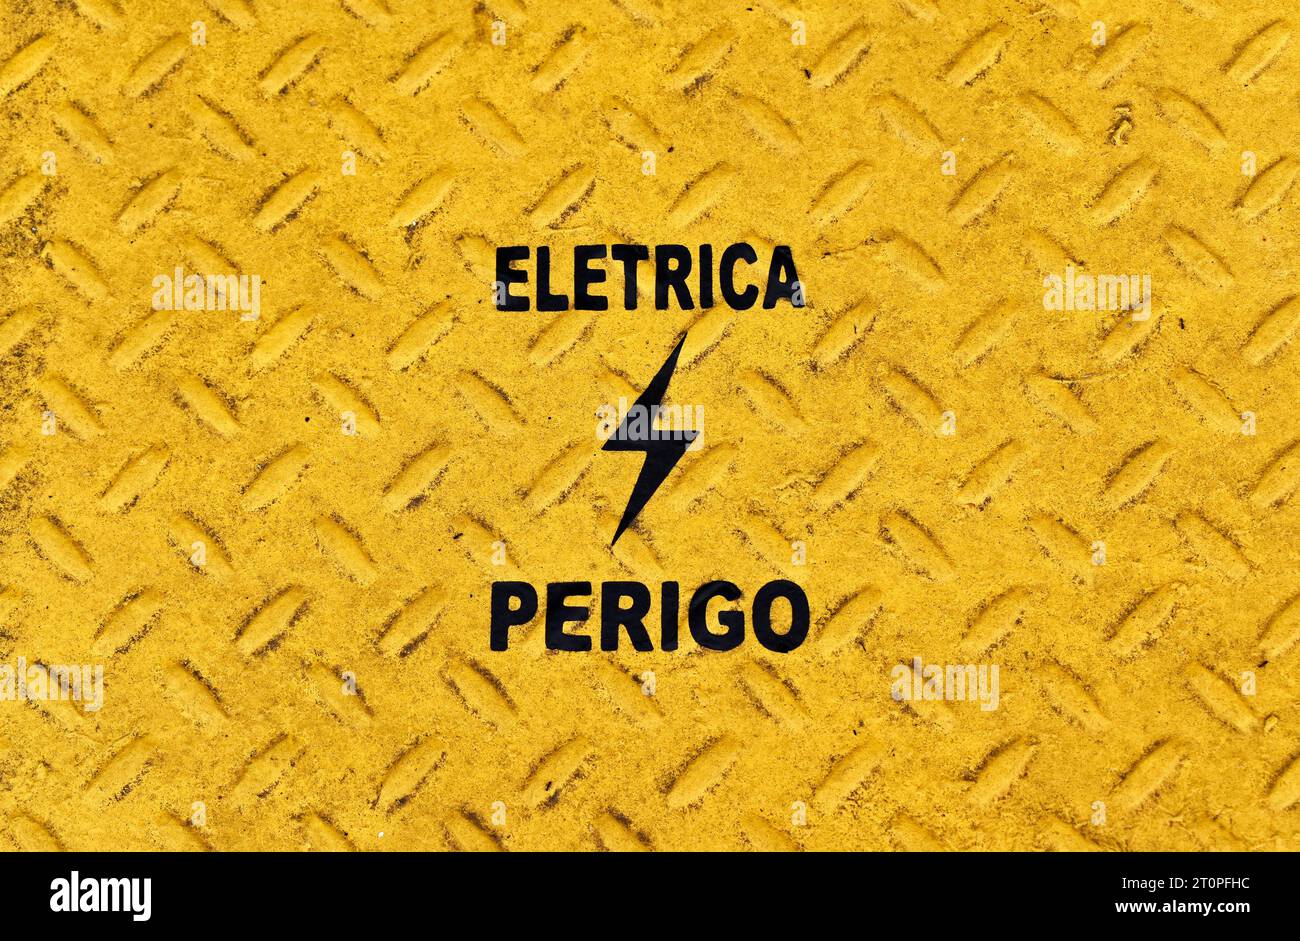 Gelbe metallische Oberfläche mit portugiesischen Wörtern, die ELETRICITY und DANGER bedeuten (Eletrica Perigo) Stockfoto